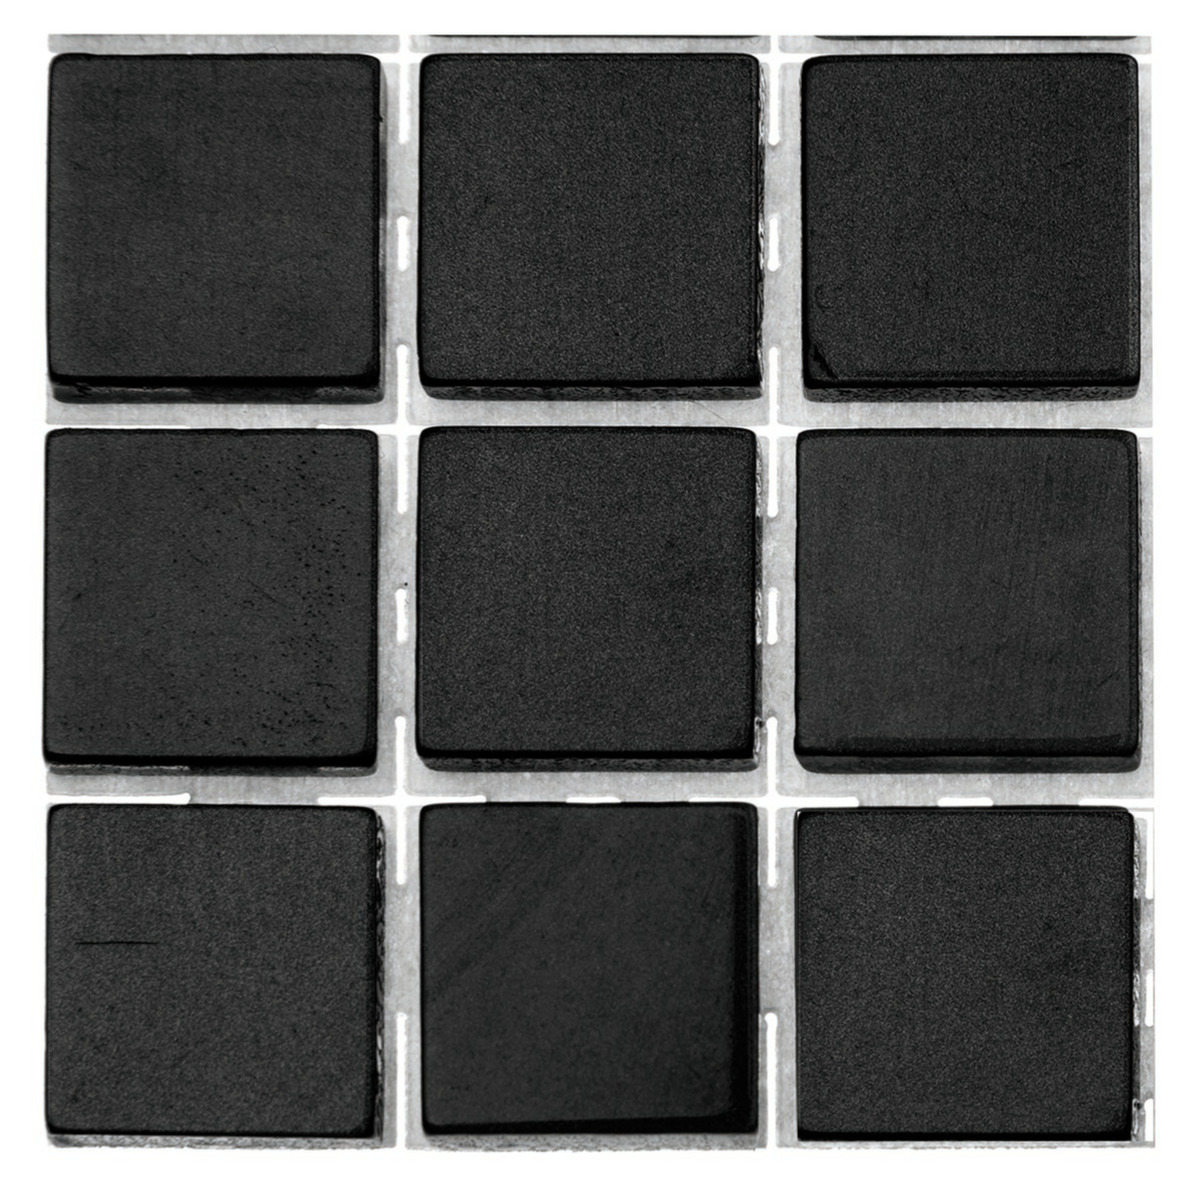 378x stuks mozaieken maken steentjes/tegels kleur zwart met formaat 10 x 10 x 2 mm